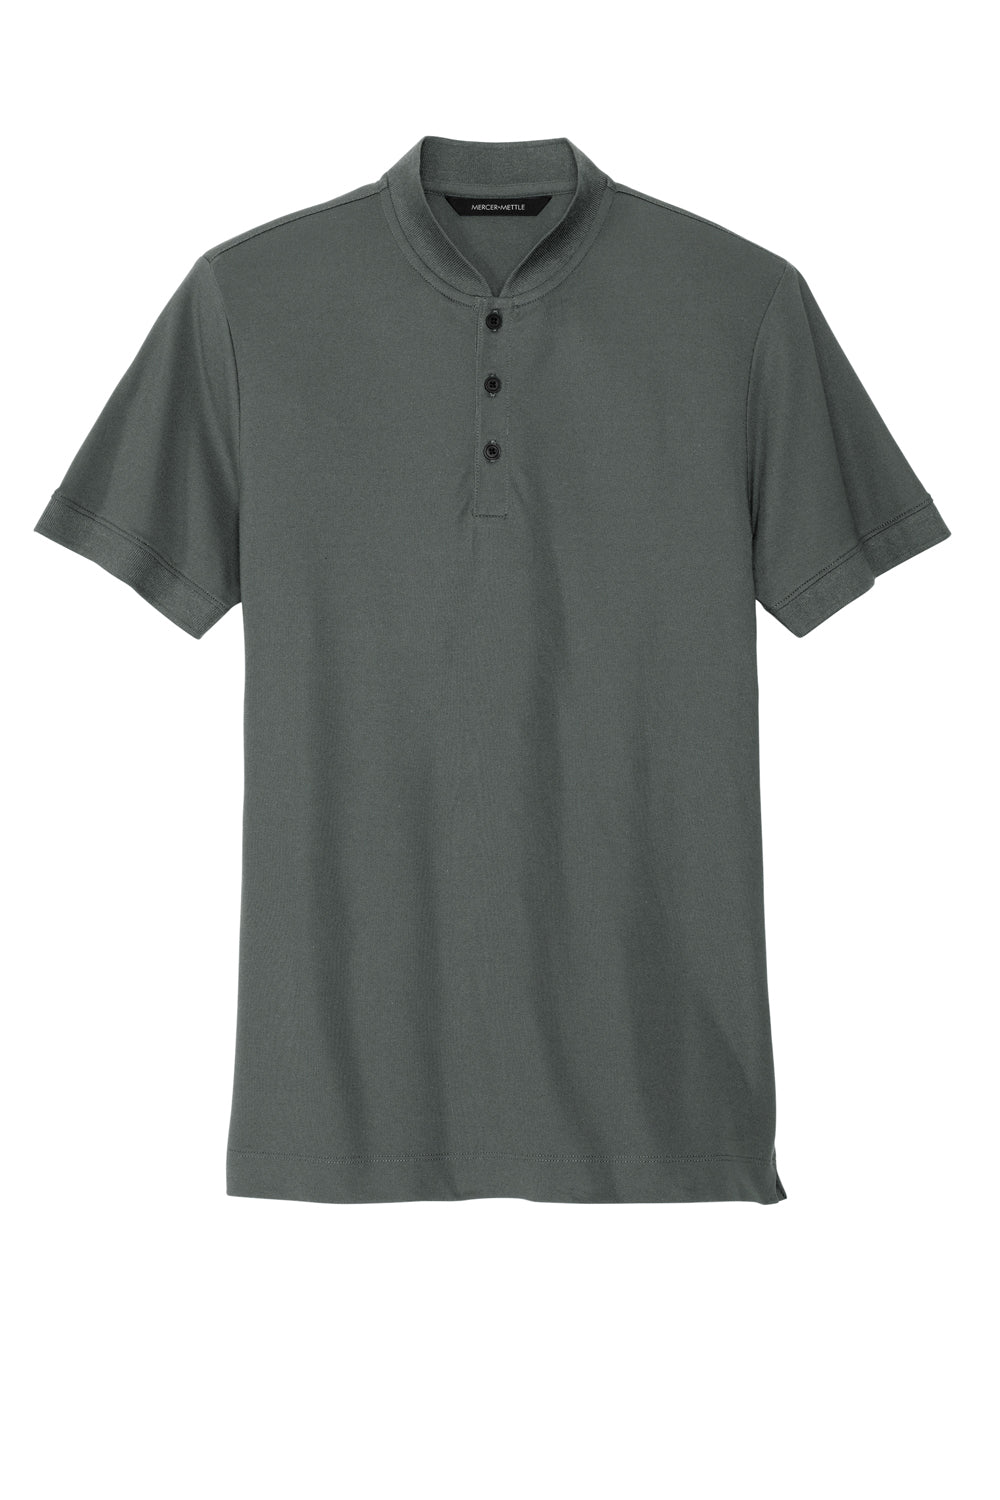 Mercer+Mettle MM1008 Stretch Pique Short Sleeve Henley T-Shirt Anchor Grey Flat Front